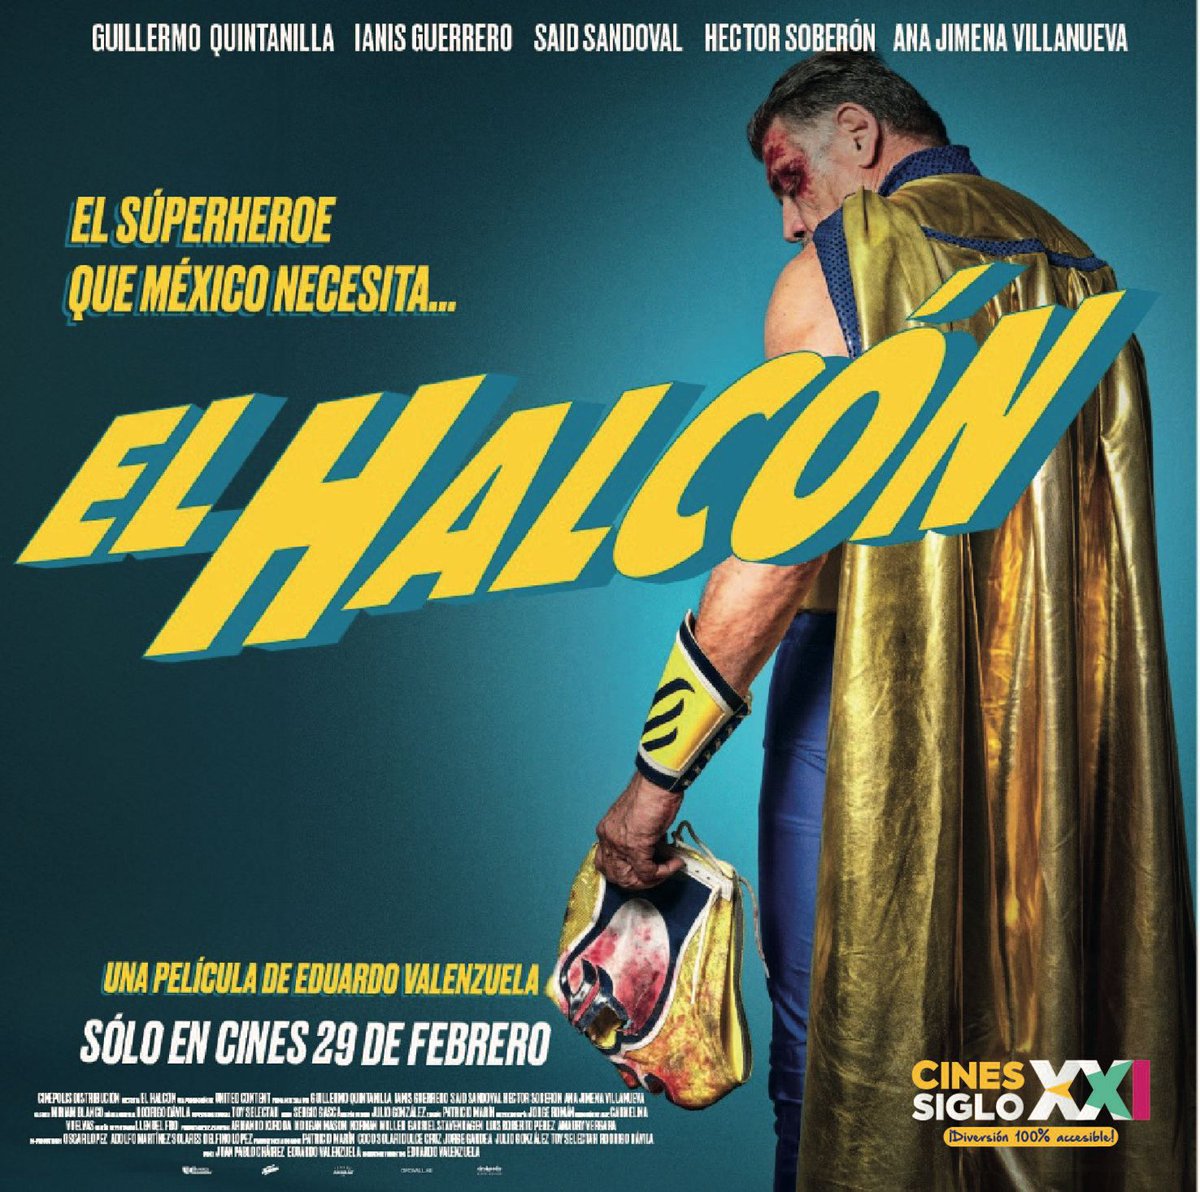 #ElHalcón es el superhéroe que México necesita 👊 
Sin superpoderes y con unos kilitos de más
Estreno este jueves en los #CinesSigloXXI
#luchadoresmexicanos
#enmascarado